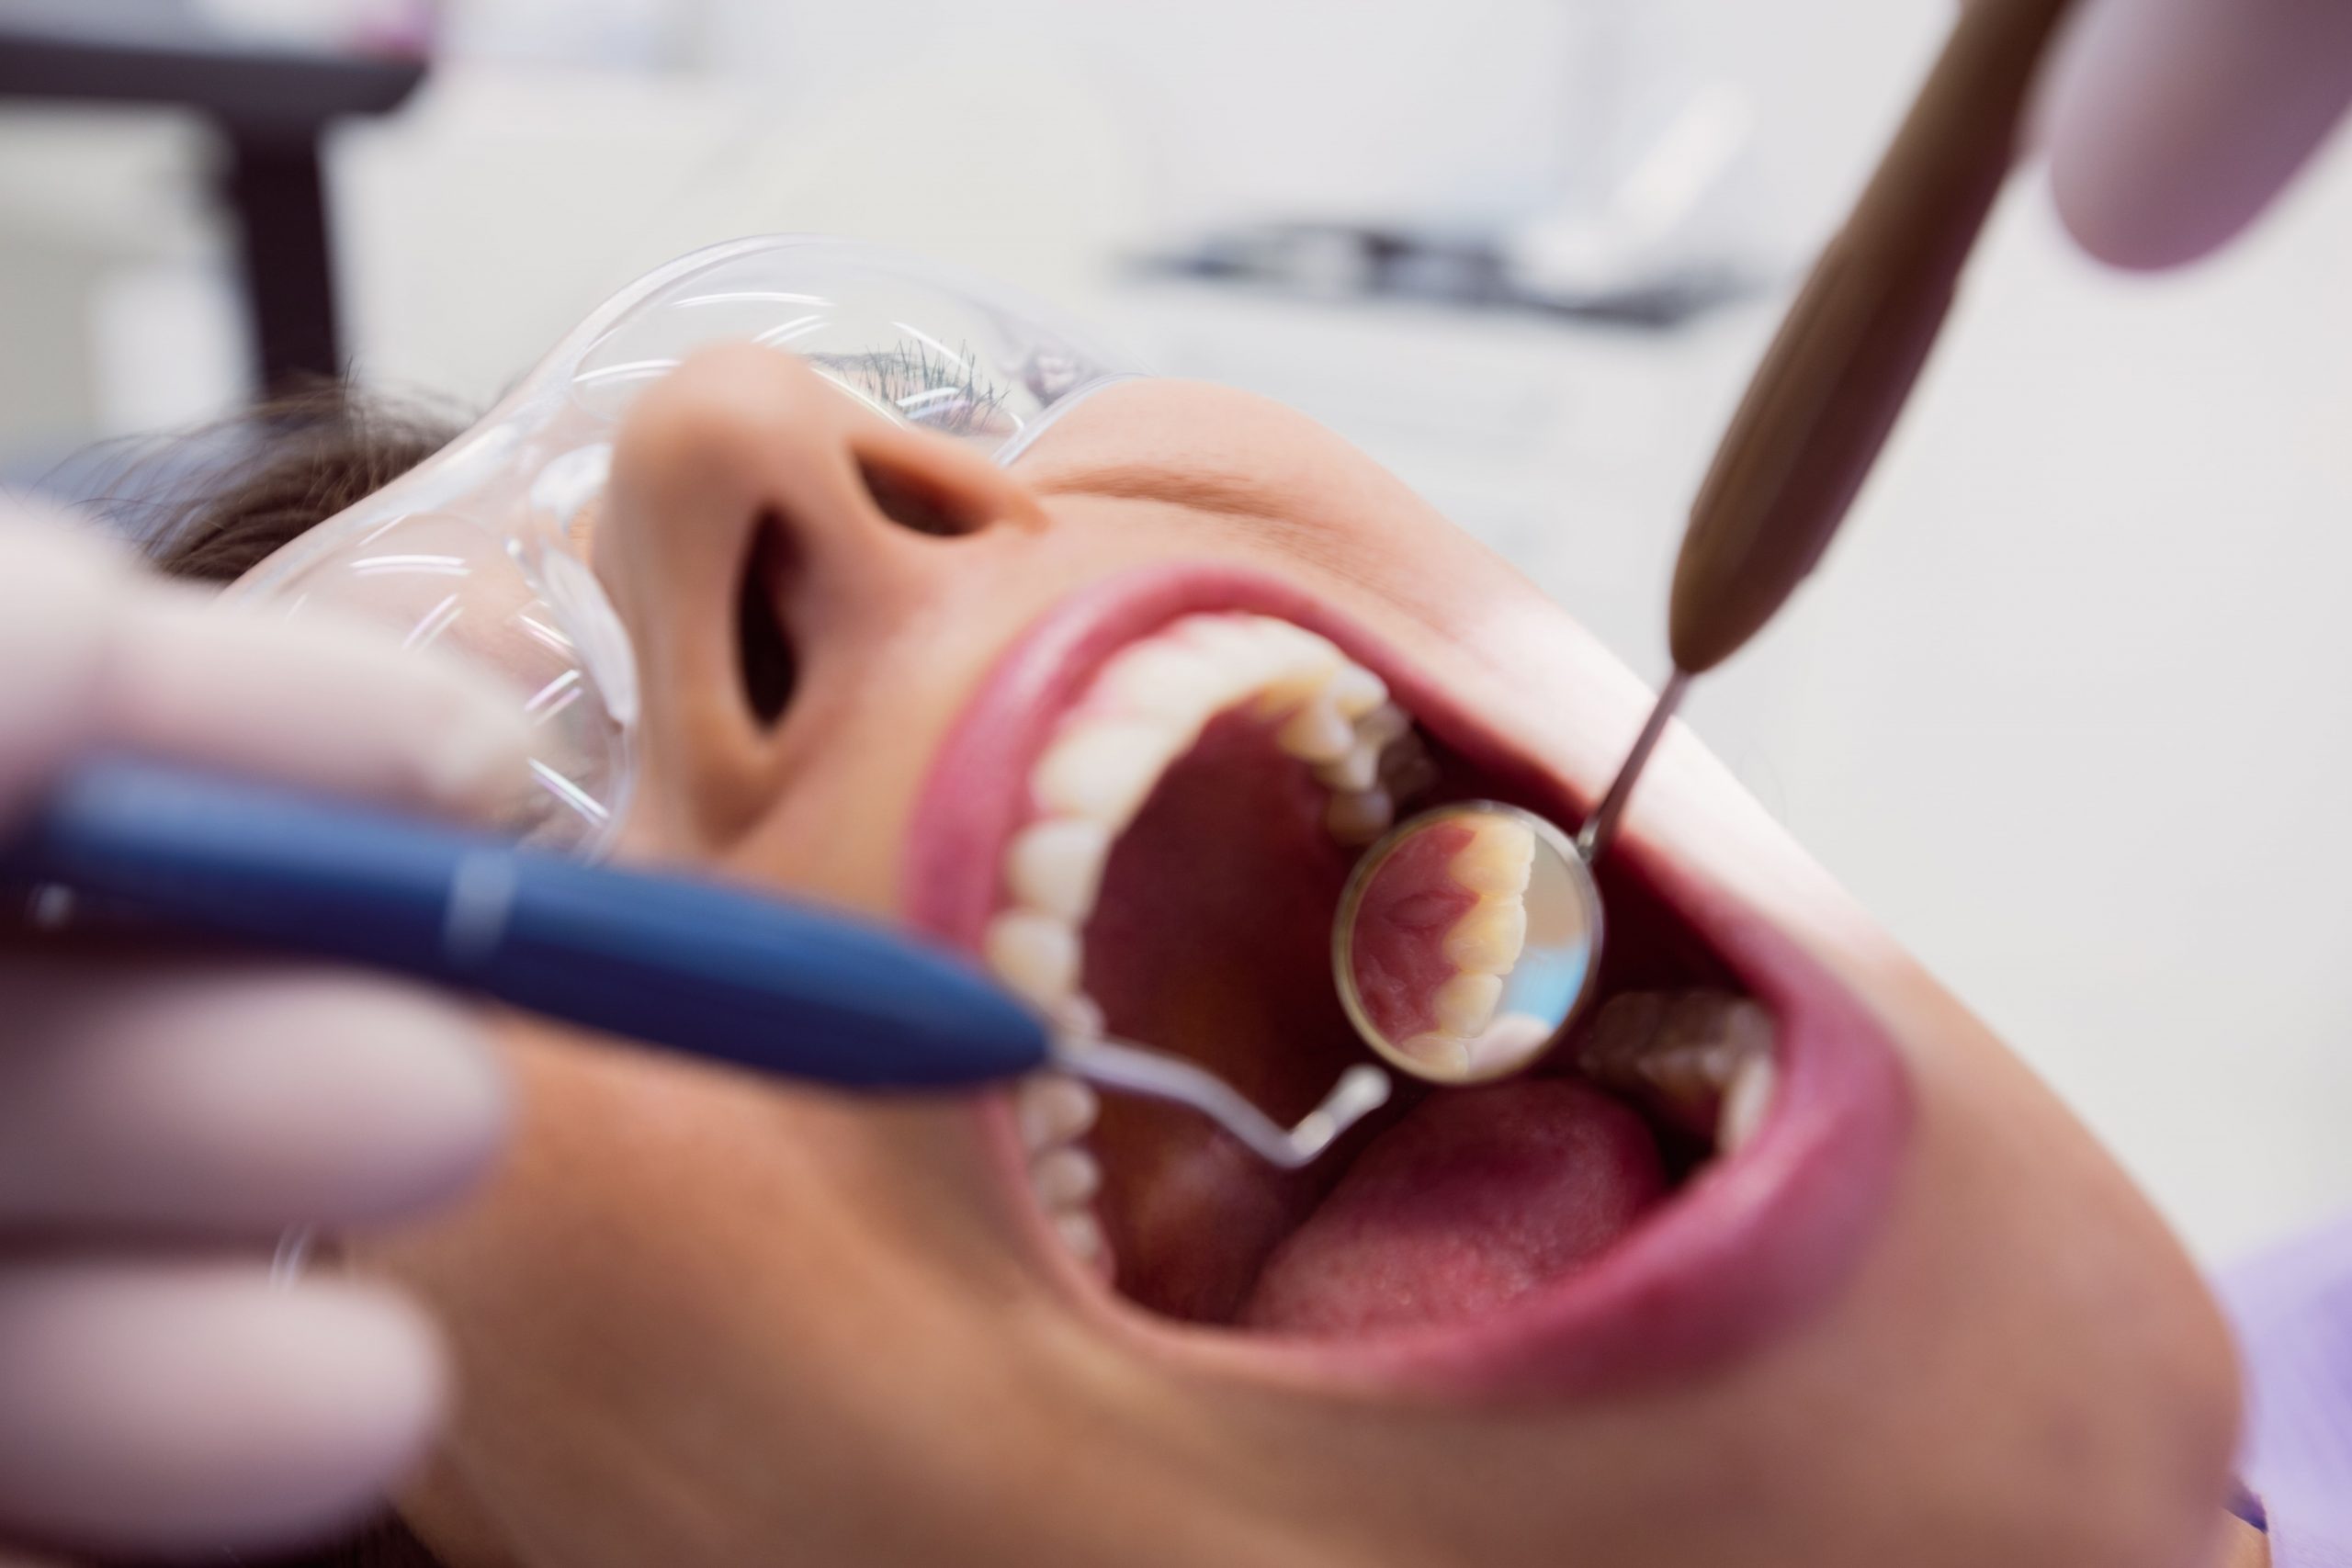 dentista-examinando-paciente-herramientas (1)